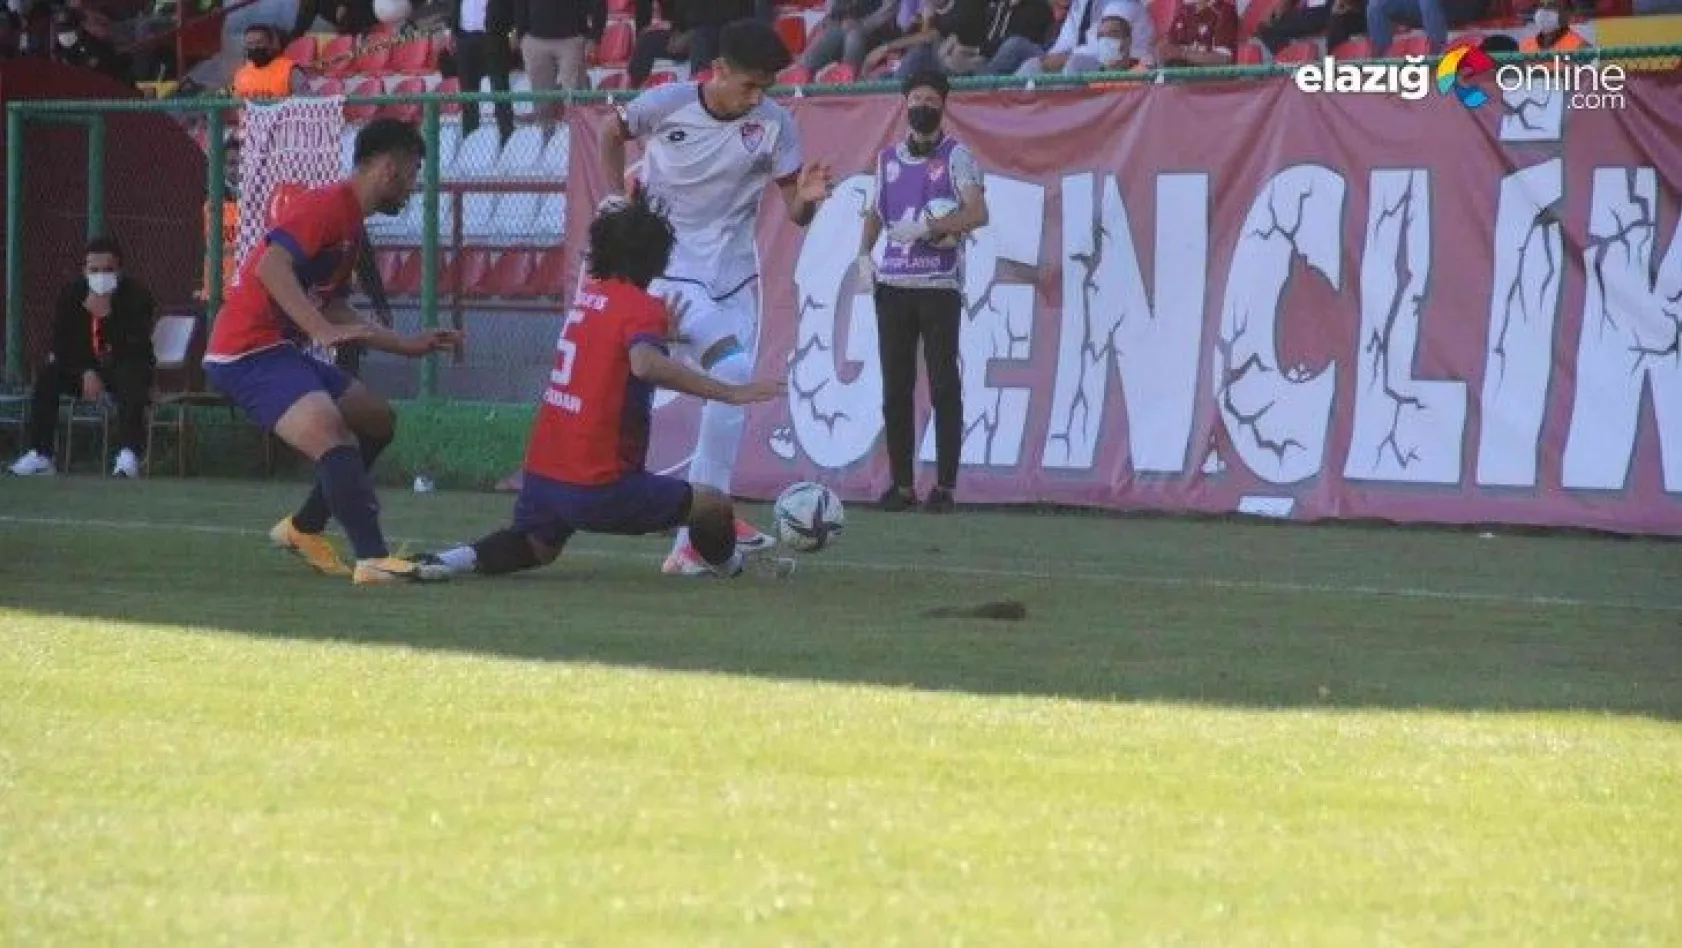 Elazığspor, sahasında Kahta 02 Spor'u 1-0 mağlup etti